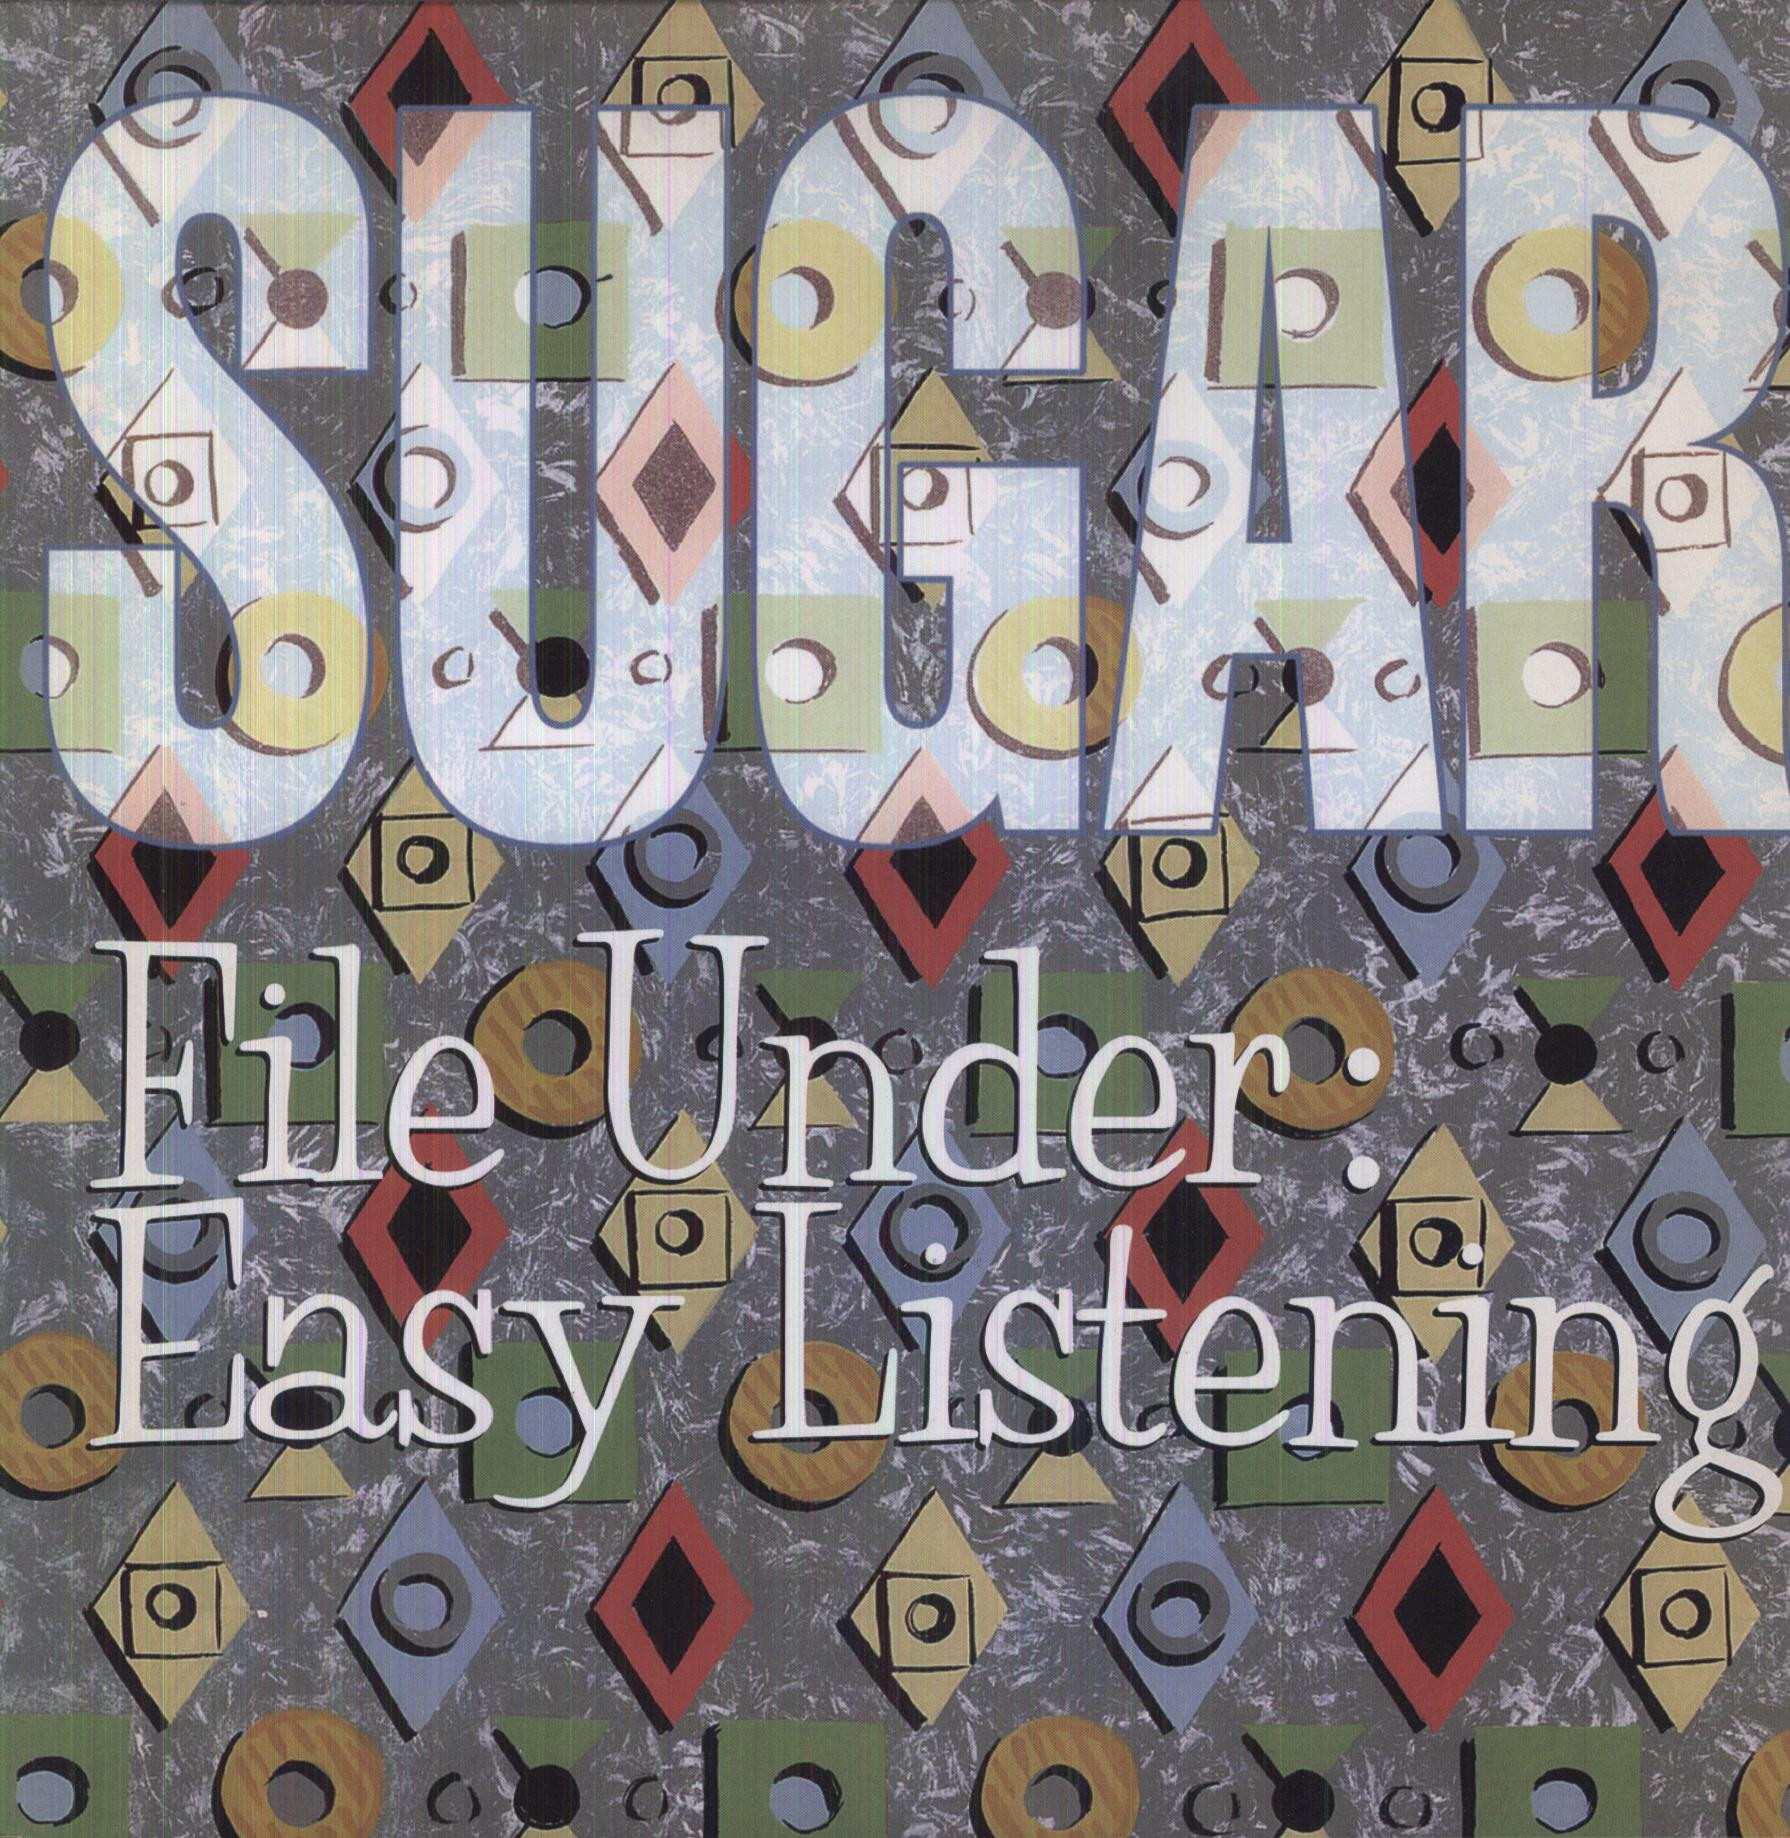 FILE UNDER: EASY LISTENING (DLX)